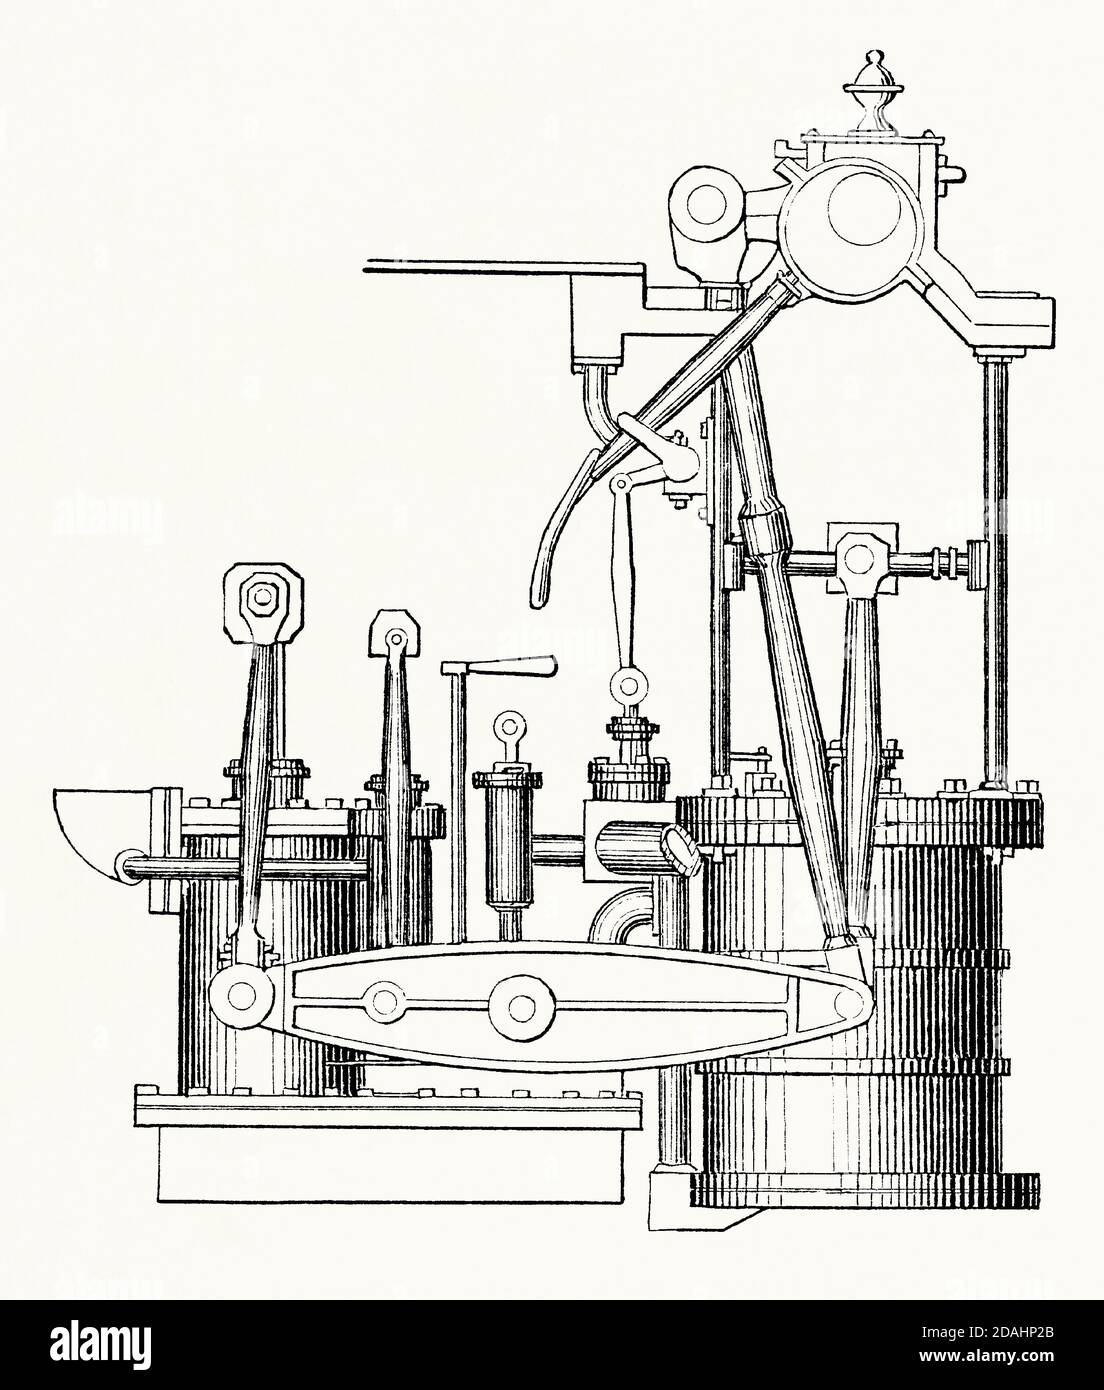 Eine alte Gravur von Napiers direkter Dampfmaschine. Es ist aus einem viktorianischen Maschinenbaubuch der 1880er Jahre. Direkte Aktion bedeutet, dass die Kraft über die Kolbenstange und/oder Pleuelstange auf die Kurbelwelle gelenkt wurde. Direkt wirkende Motoren hatten den Vorteil, dass sie kleiner und weniger schwer als Balken- oder Seitenhebelmotoren waren, aber sie waren anfälliger für Verschleiß und erforderten daher mehr Wartung. Robert Napier (1791–1876) war ein schottischer Marineingenieur. Aus seinen Arbeiten in Govan, Glasgow, Schottland, Großbritannien, baute Napier Schiffsmotoren. Stockfoto